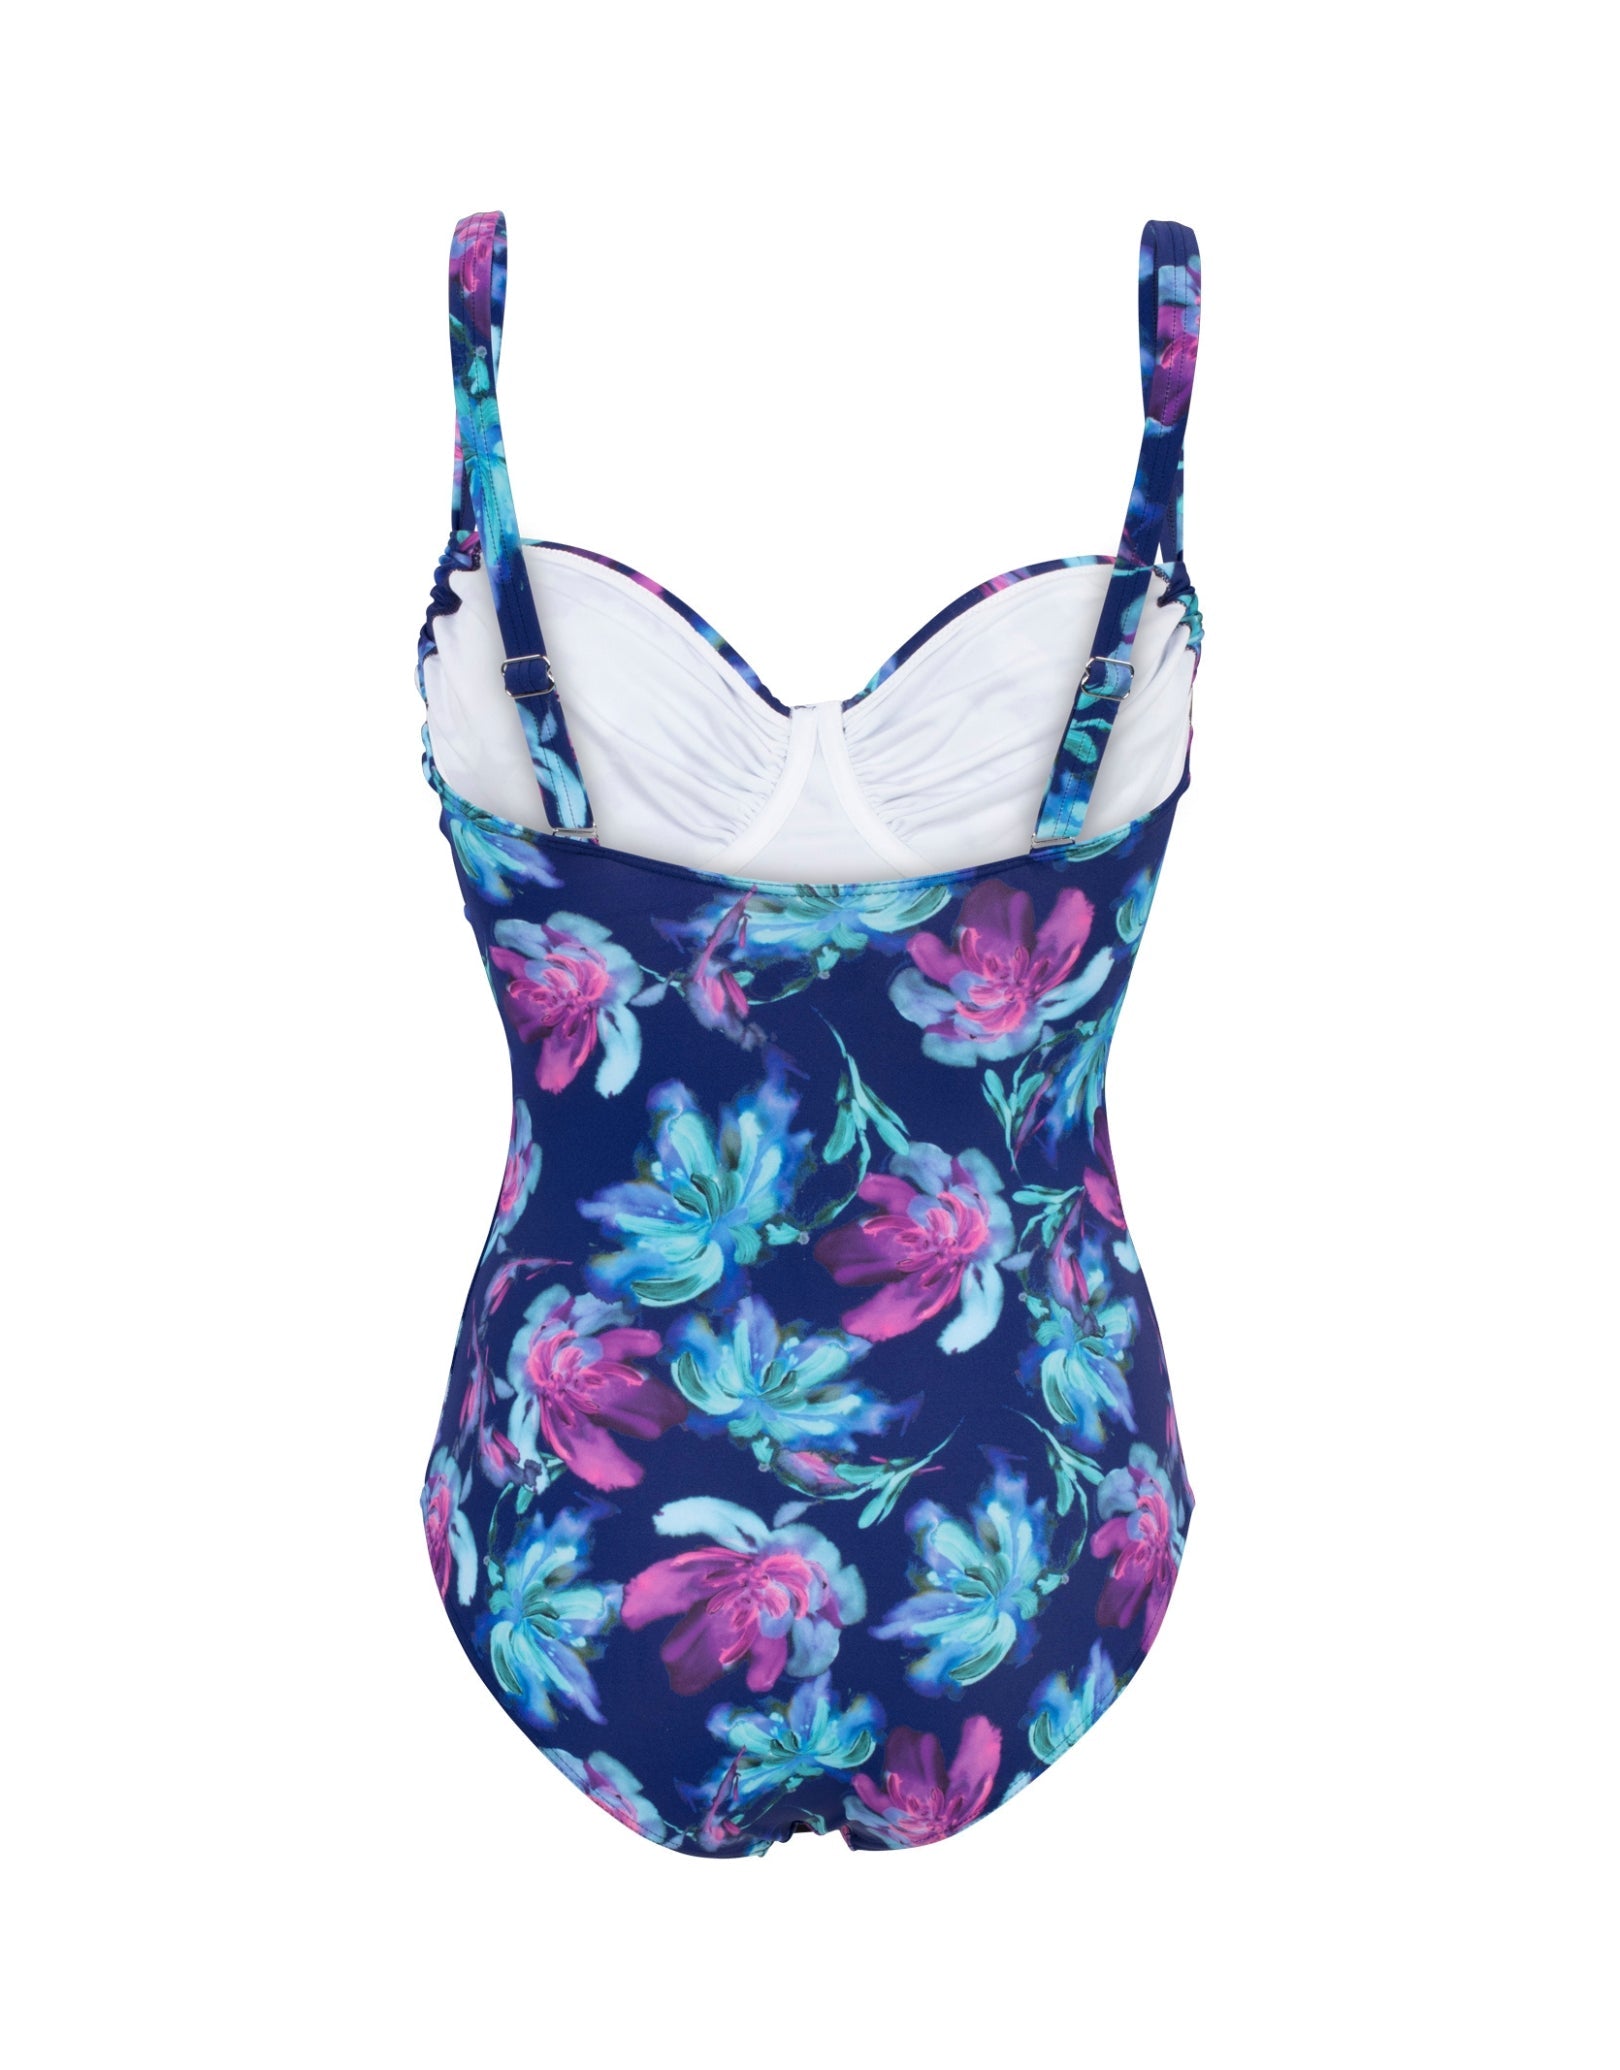 Floral Adjustable Swimsuit - Navy/Purple | Simply Swim | Simply Swim UK